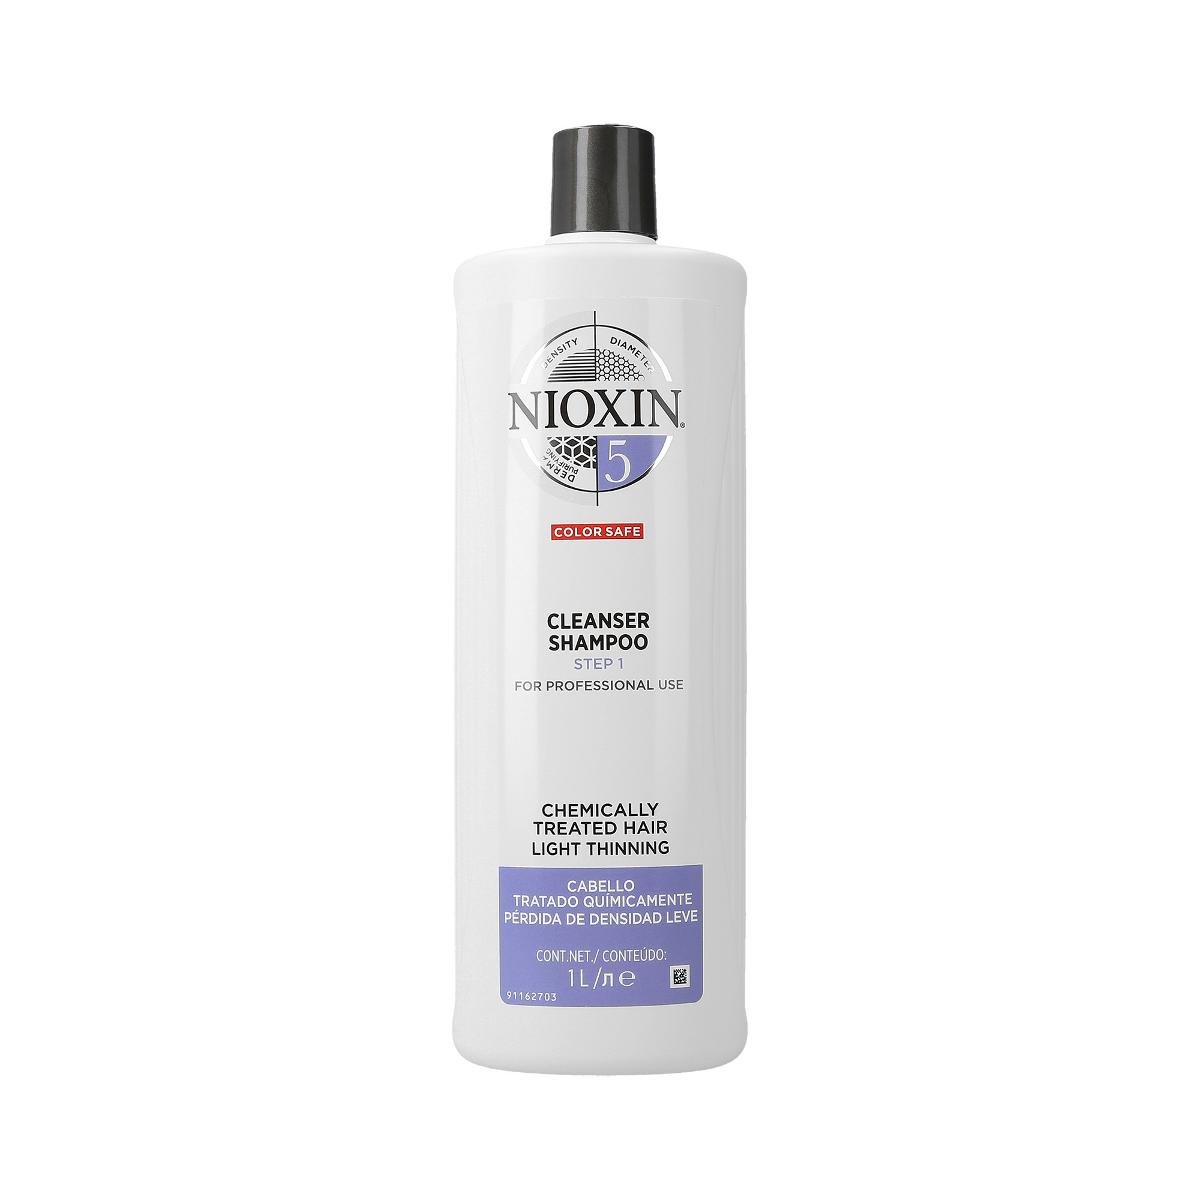 Nioxin NIOXIN 5 Cleanser Shampoo oczyszczający szampon do włosów lekko przerzedzonych, po zabiegach chemicznych 1000ml 2363